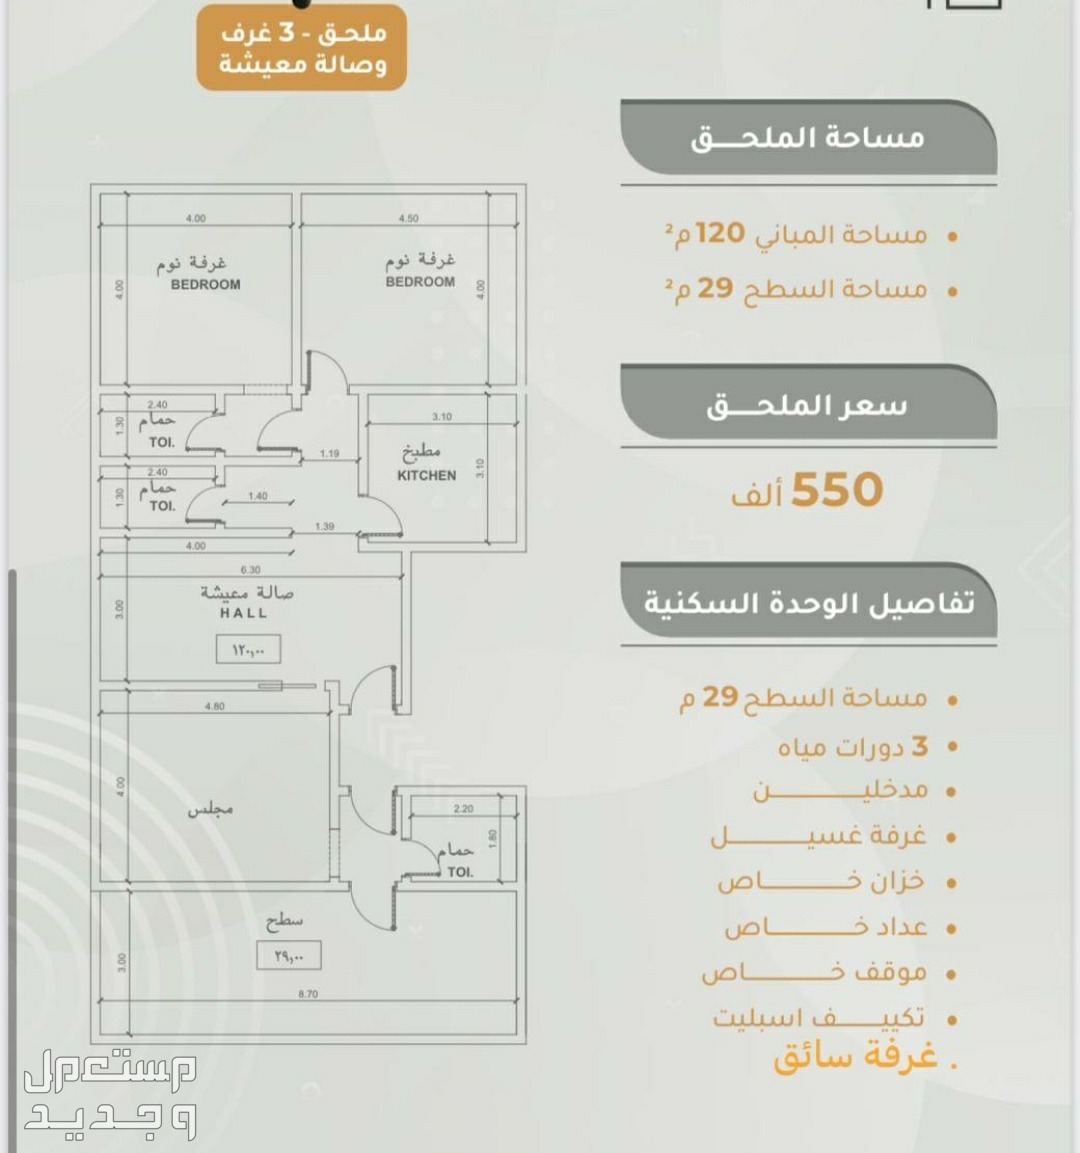 شقة للبيع في المروة - جدة بسعر 530 ألف ريال سعودي